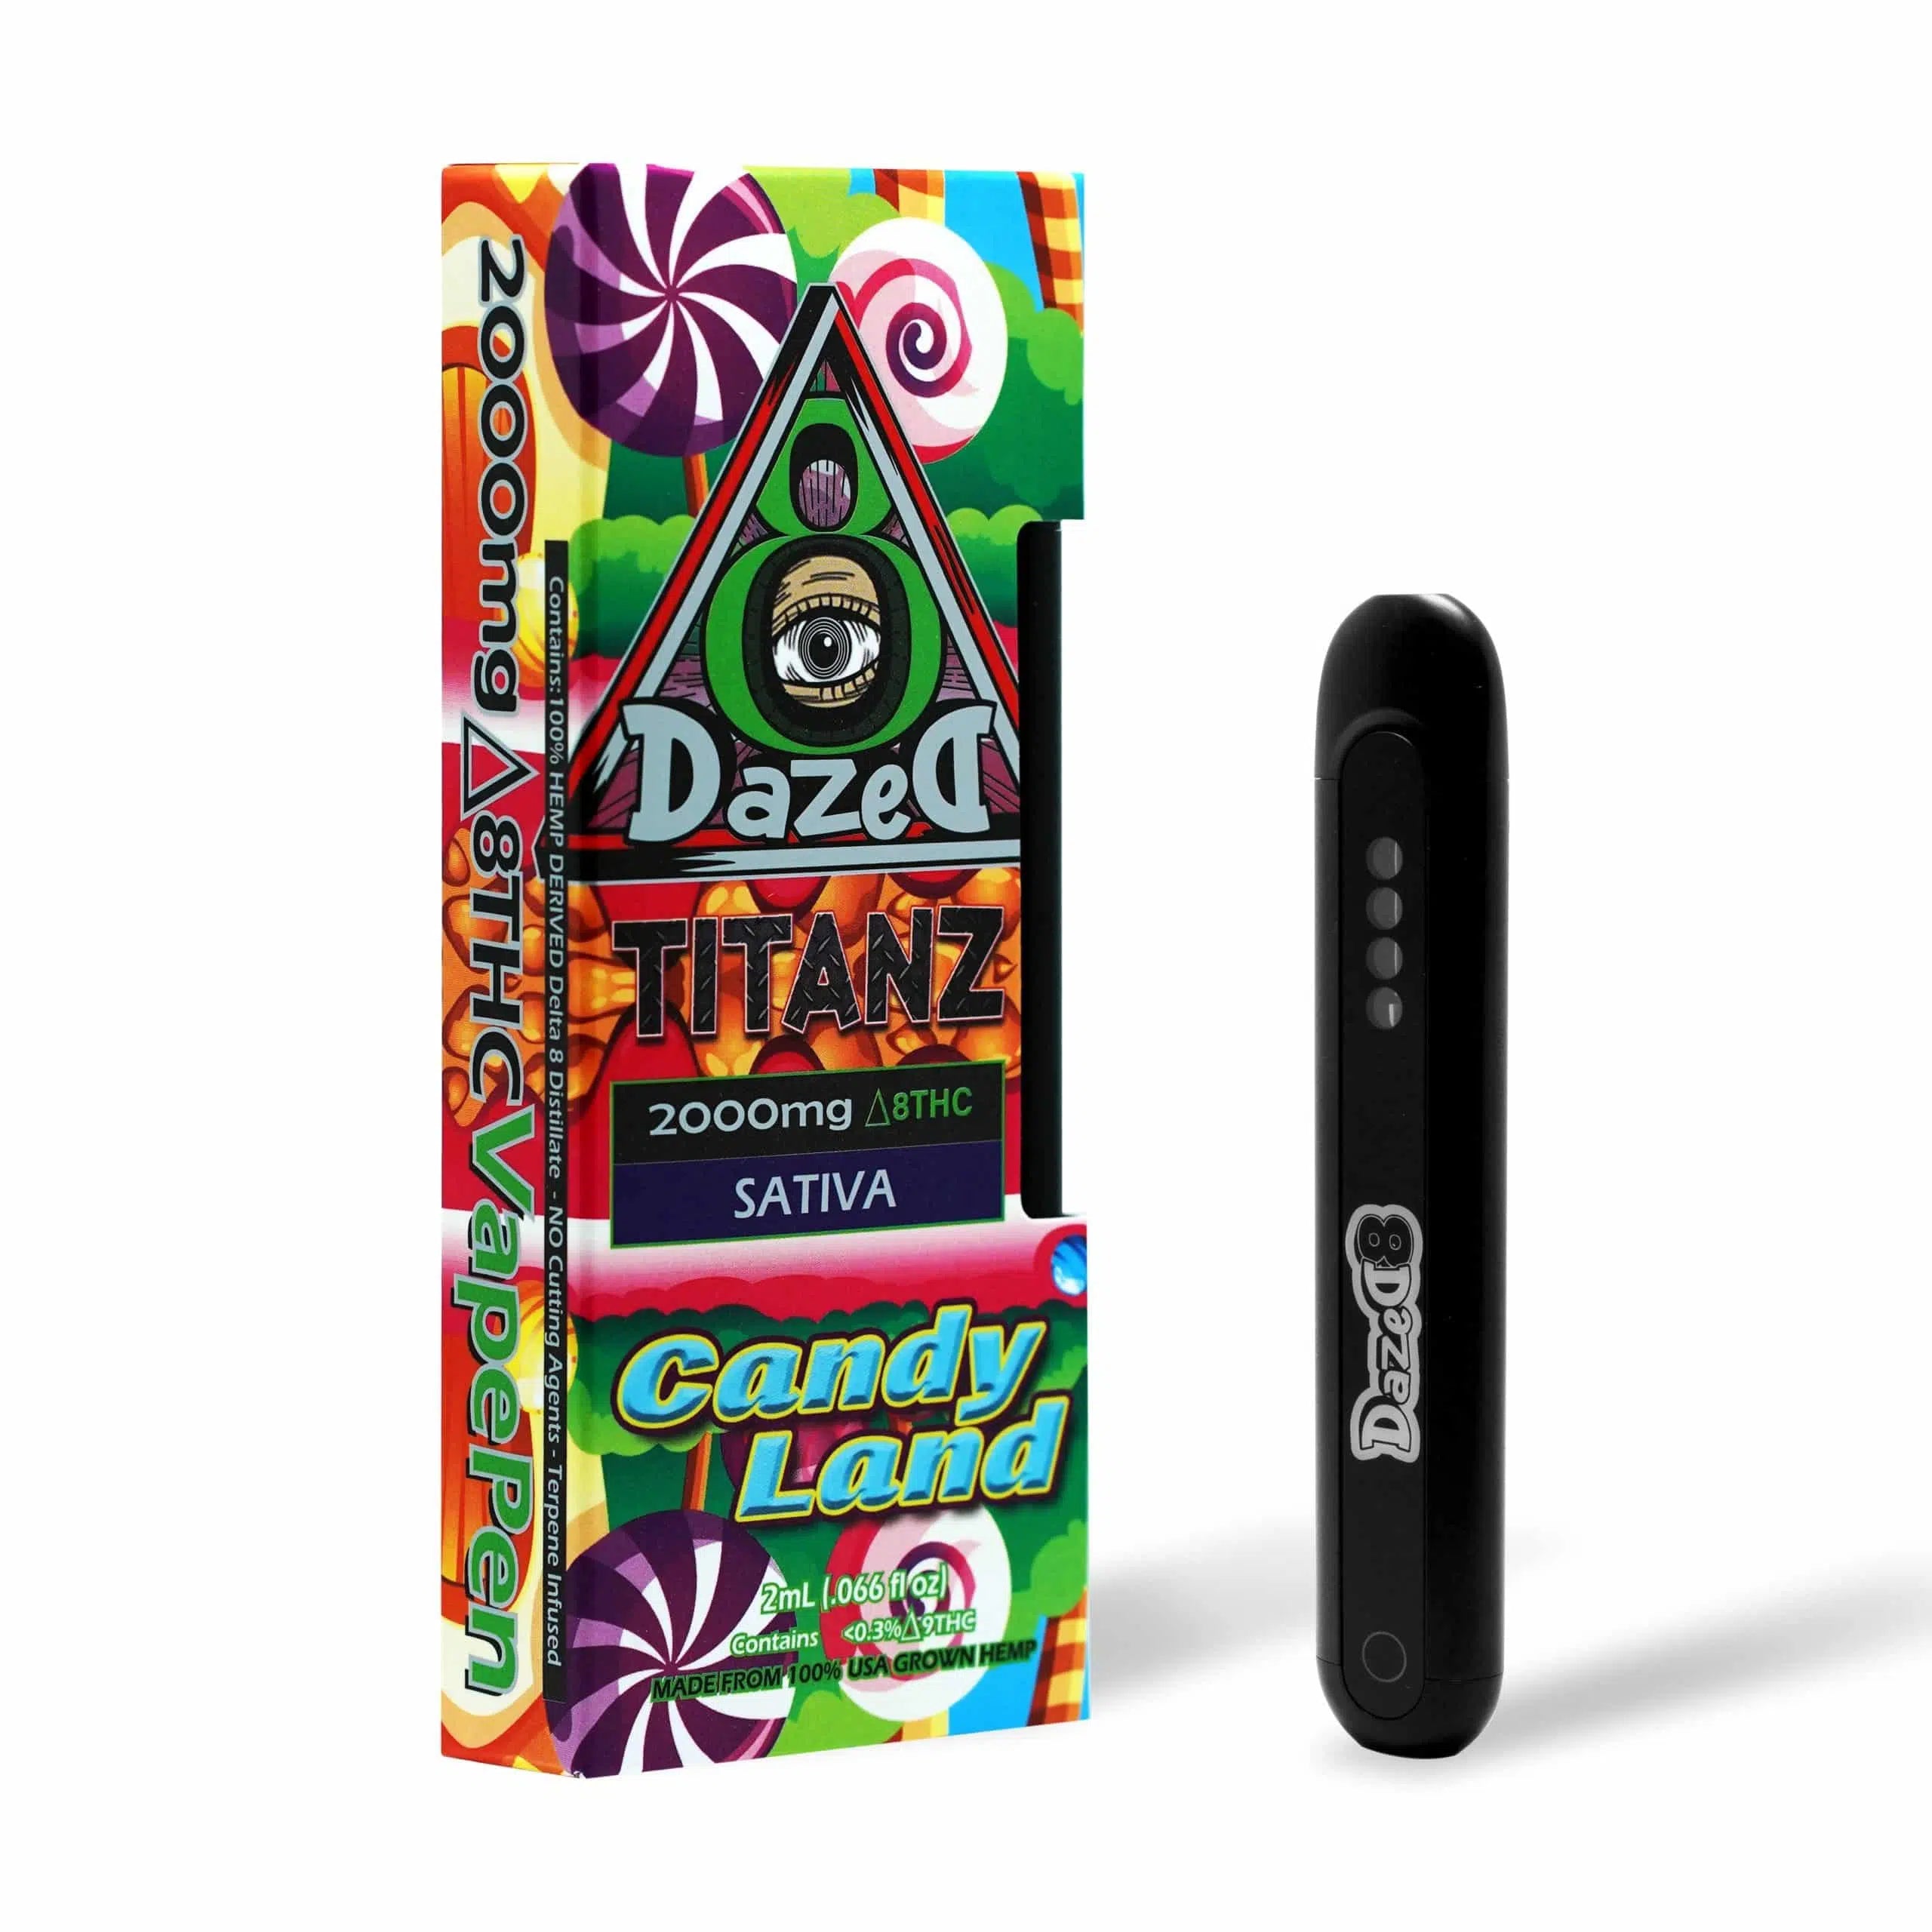 DazeD8 CandyLand Delta 8 Disposable (2g) Best Price